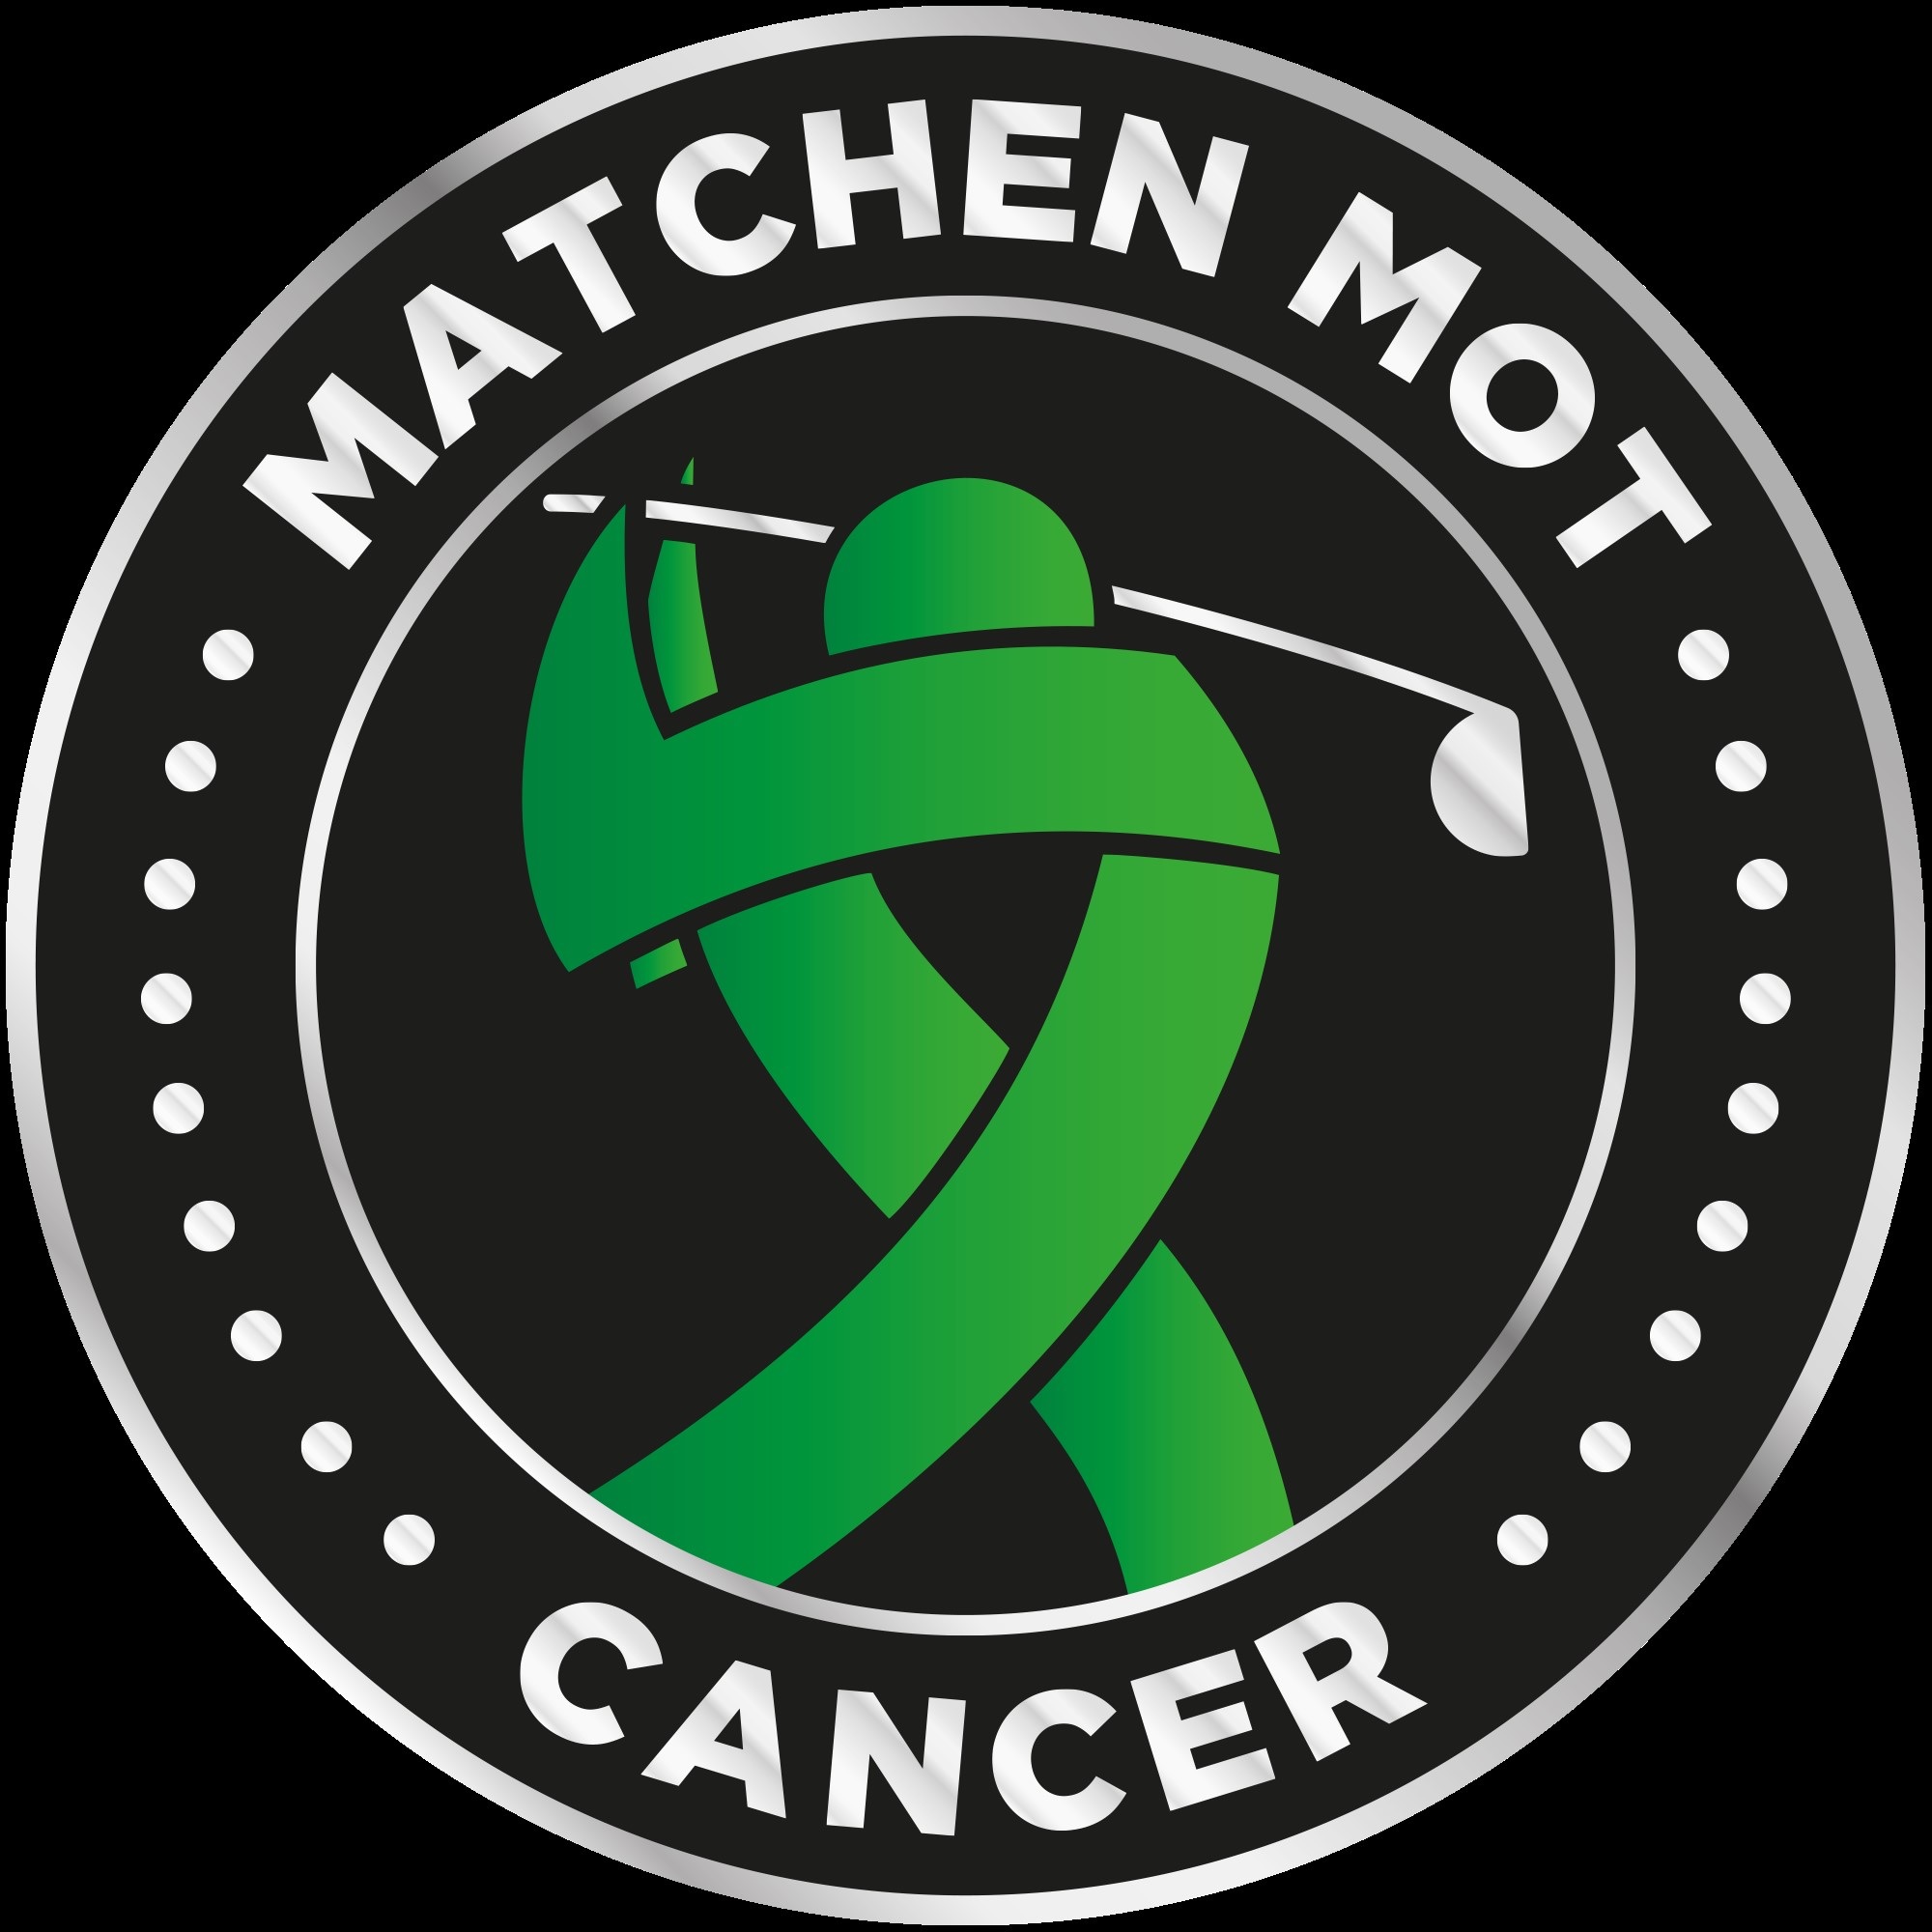 MATCHEN MOT CANCER